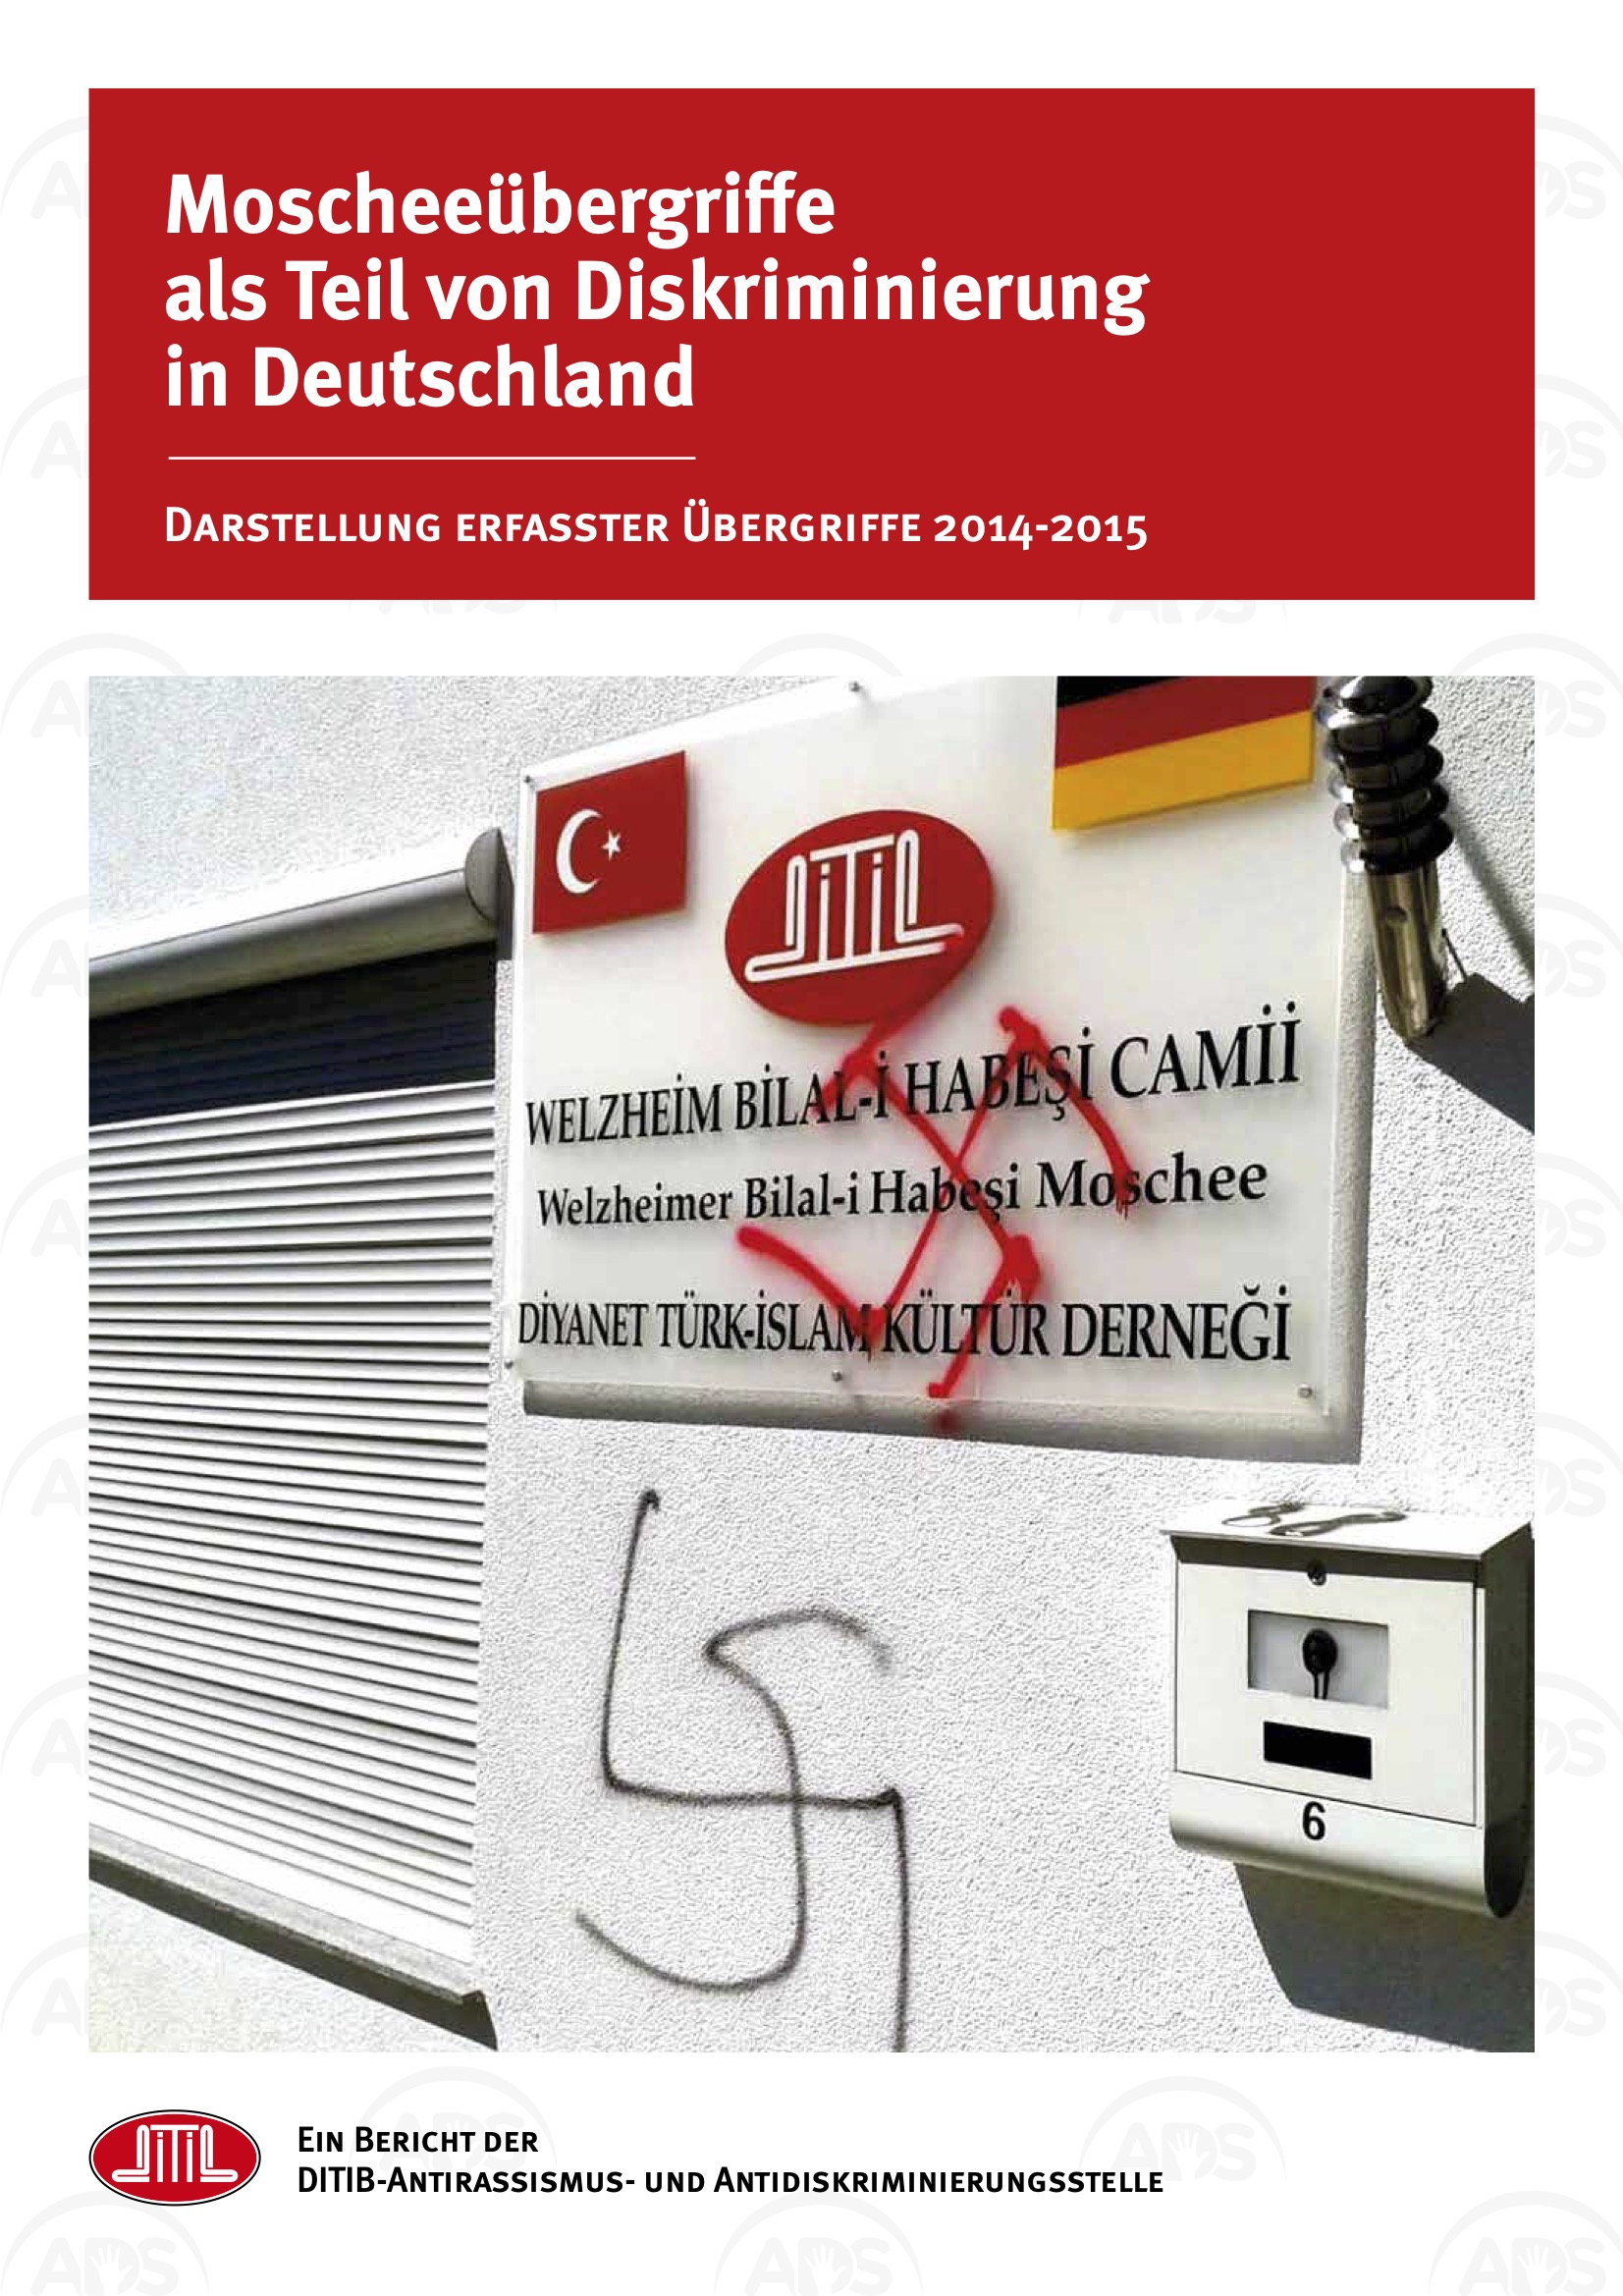 Moscheeübergriffe als Teil von Diskriminierung in Deutschland 2014-2015